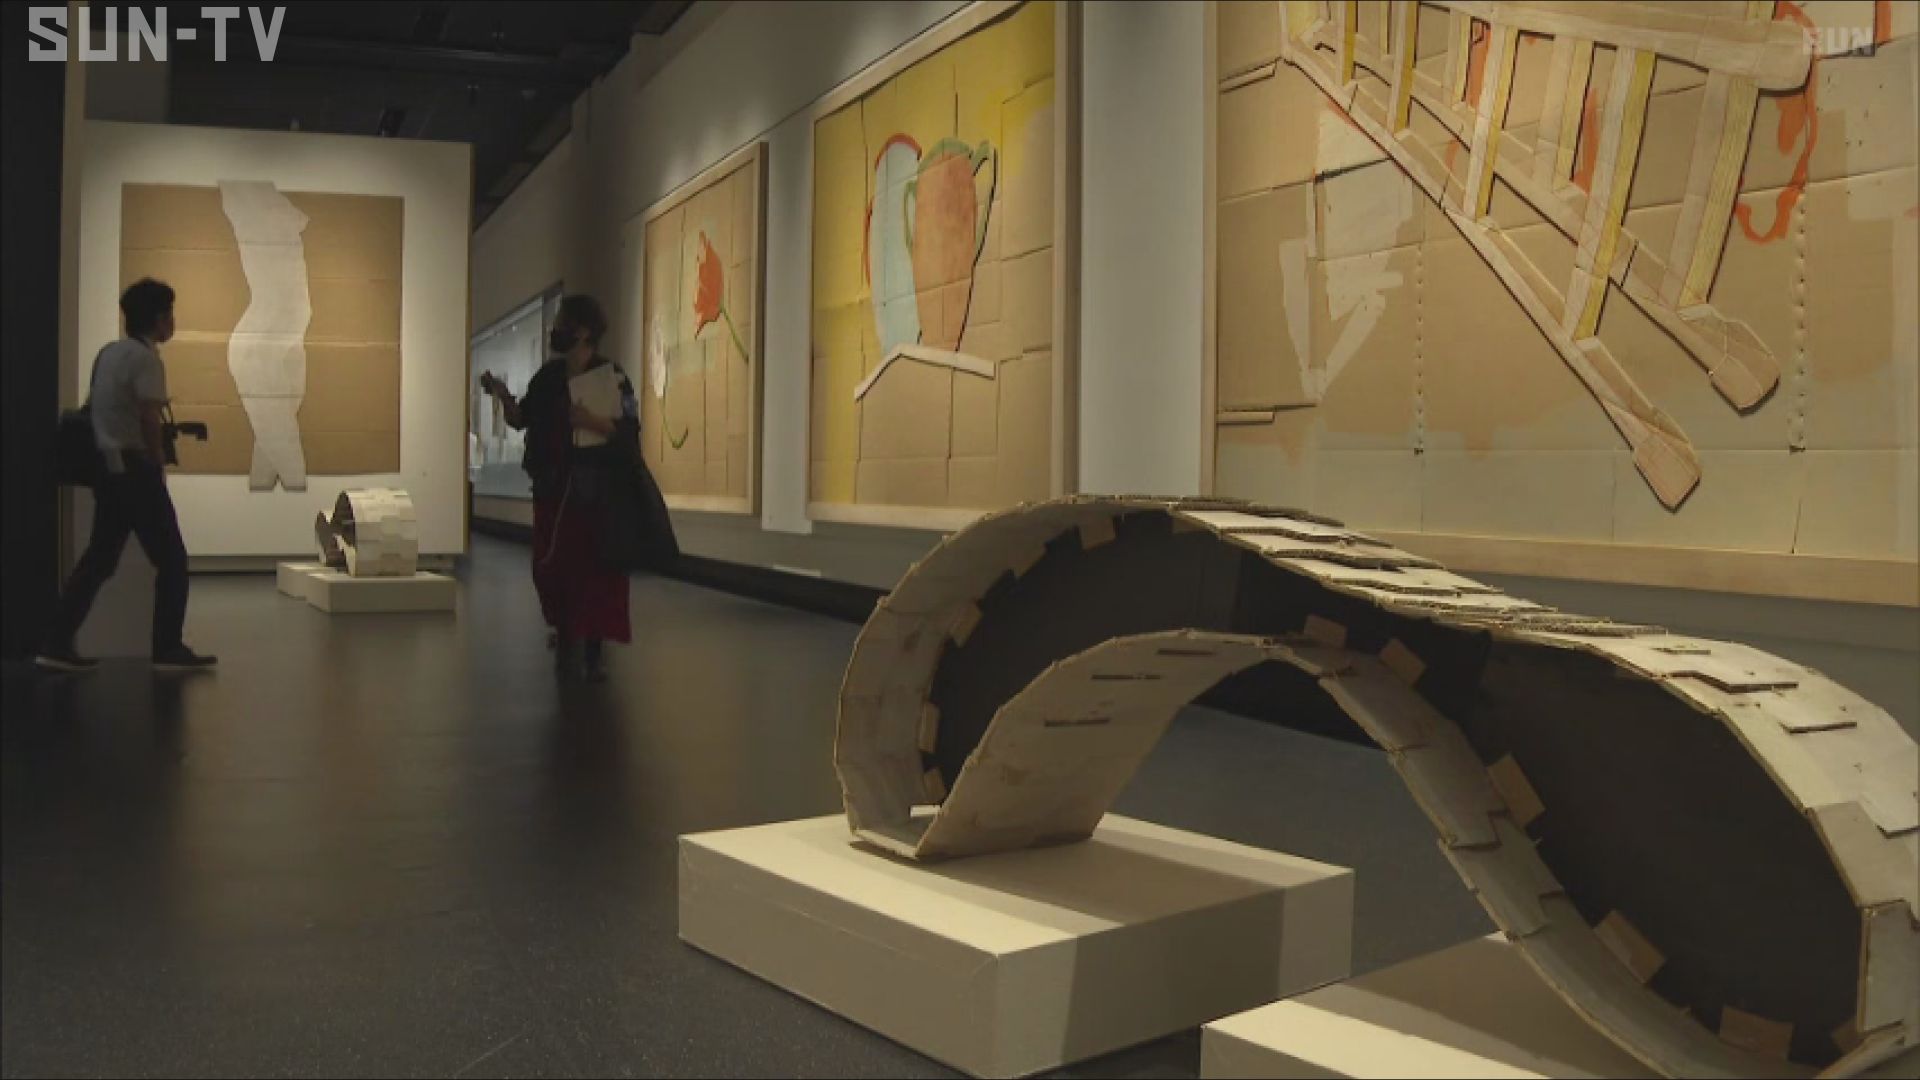 日比野克彦さんの作品200点を展示 姫路市立美術館 | サンテレビニュース